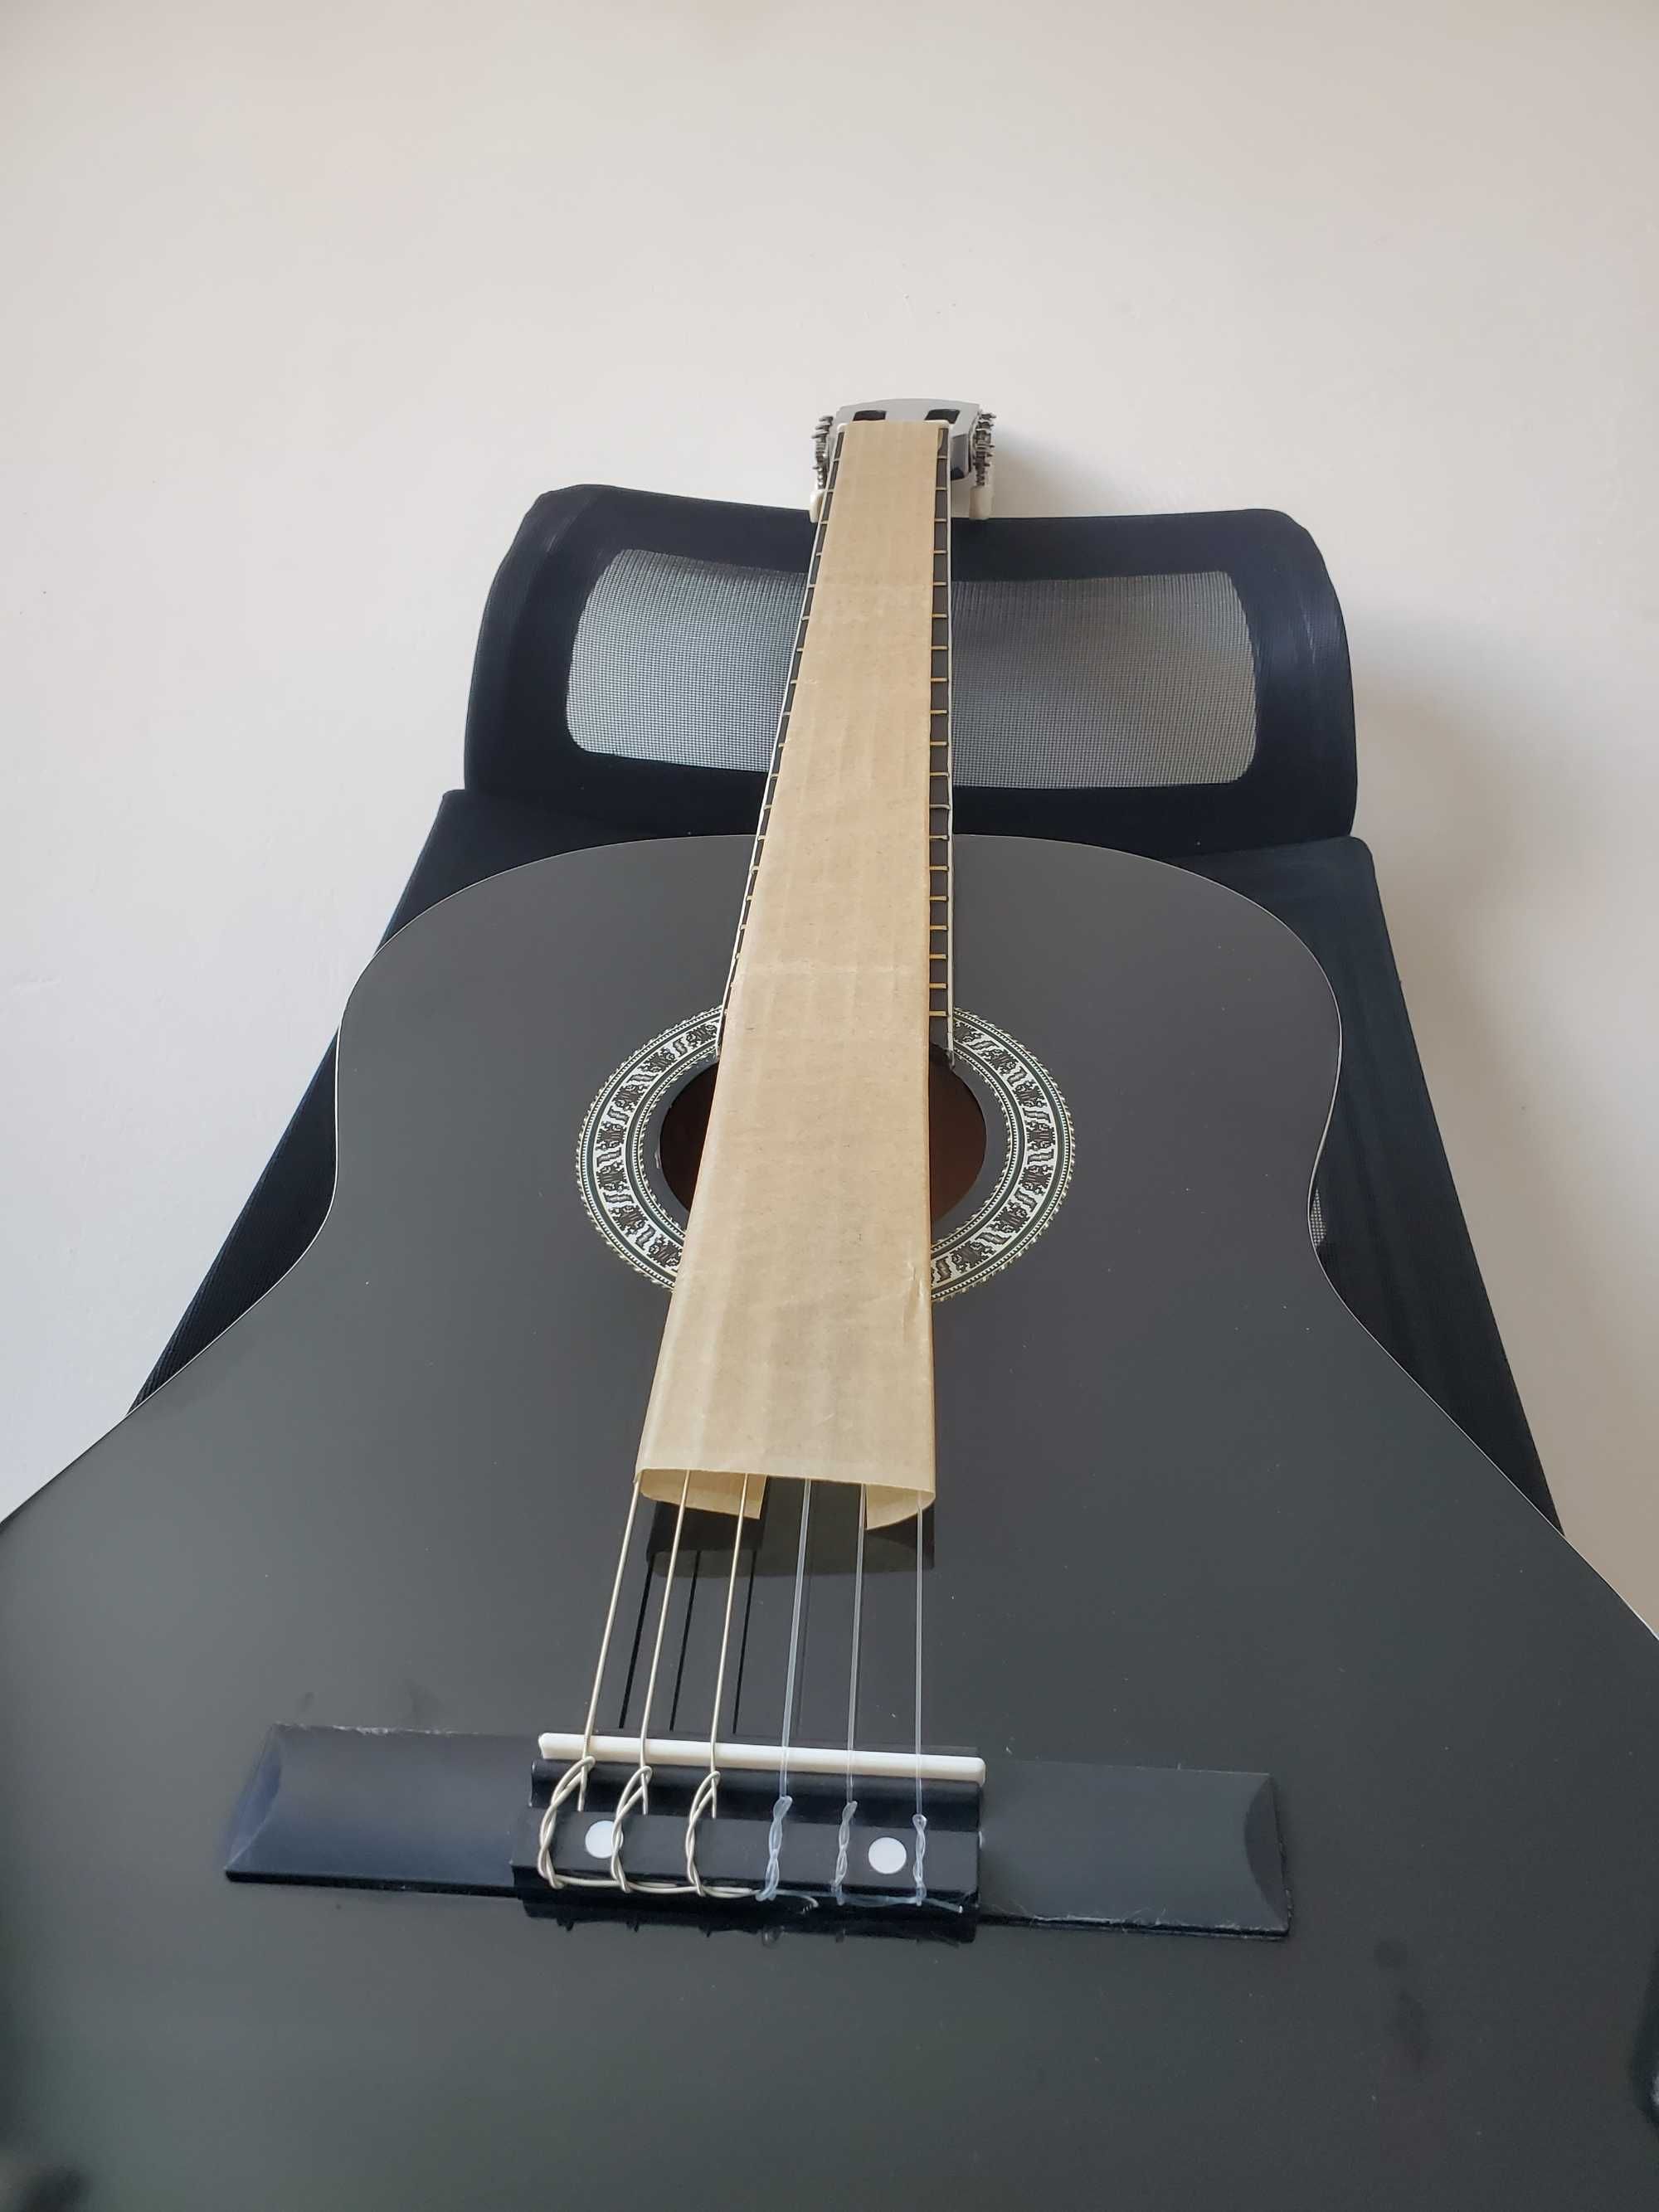 Класична гітара 4/4 чорна классическая гитара анкерный гриф черная